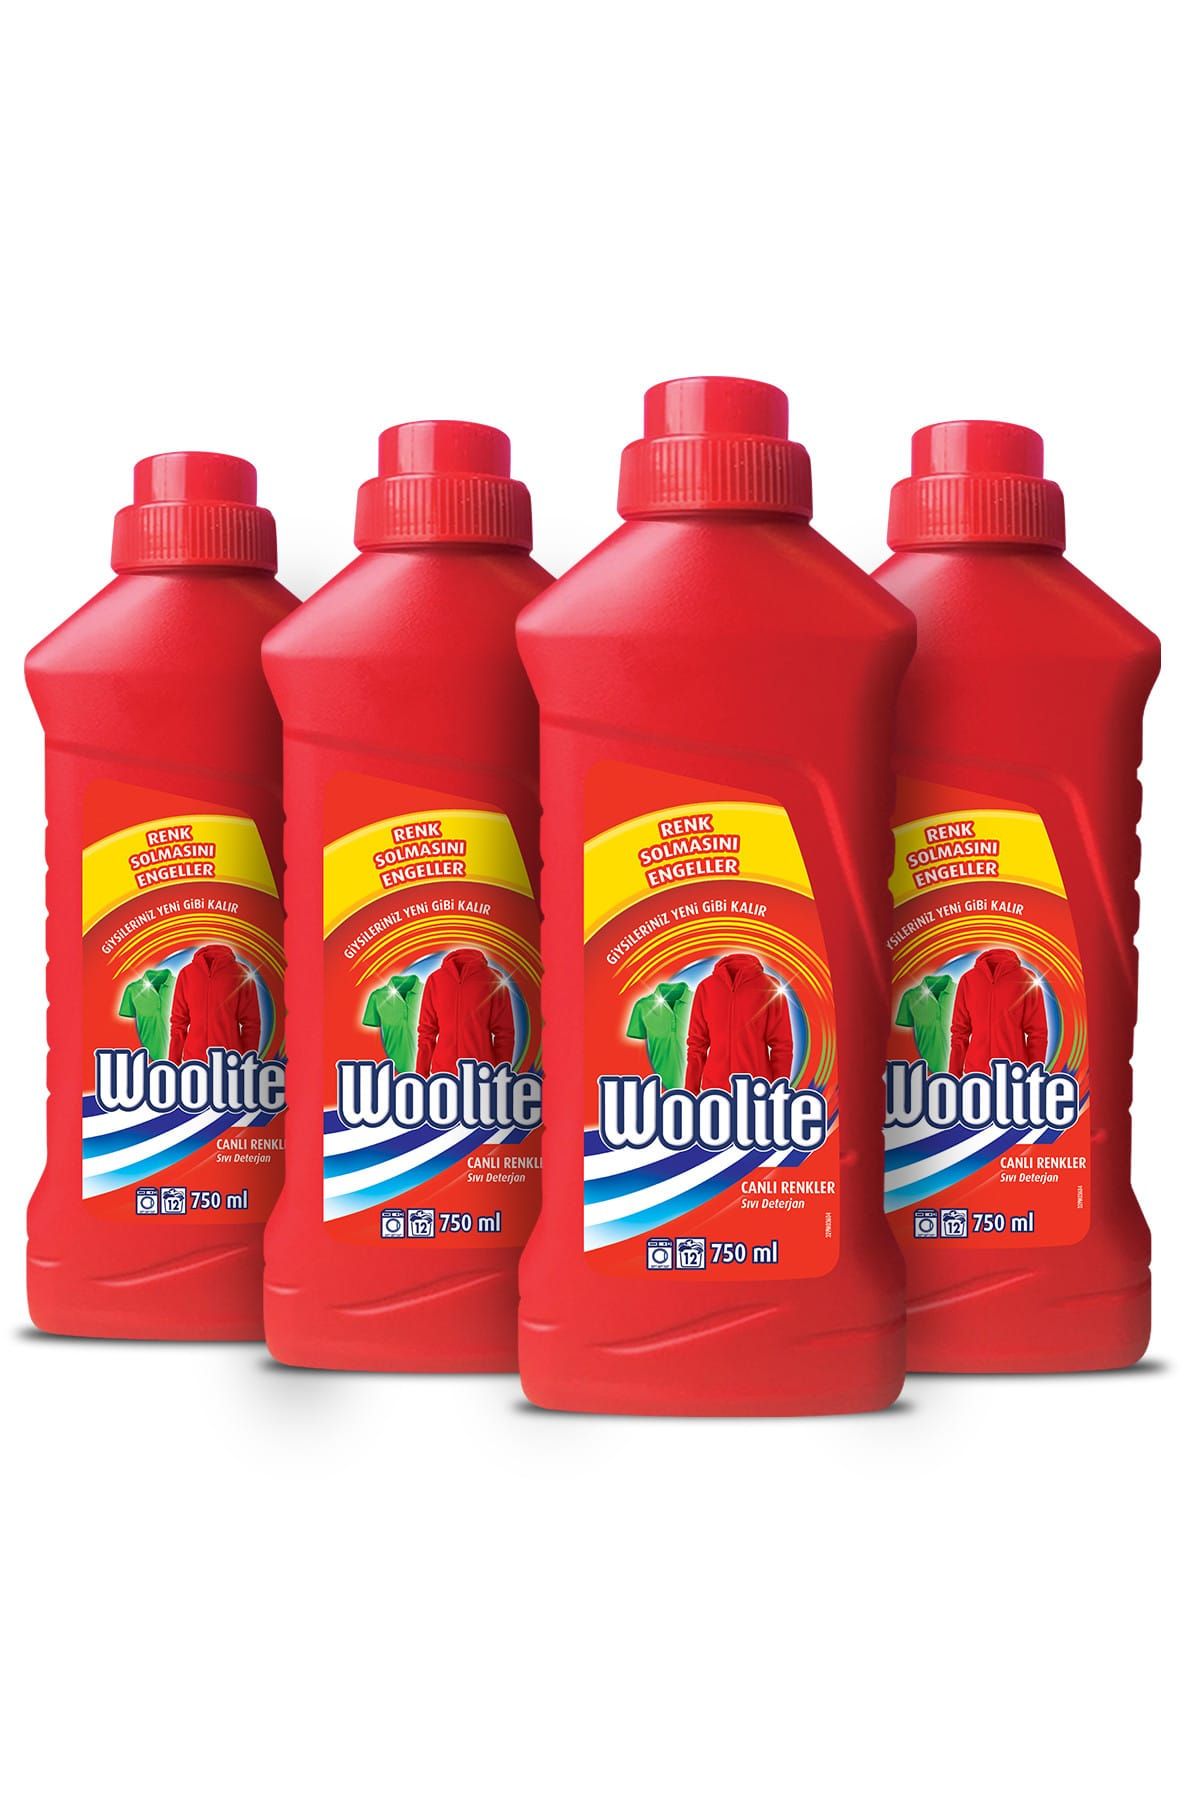 Woolite Canlı Renkler 4x750 ml Sıvı Çamaşır Deterjanı